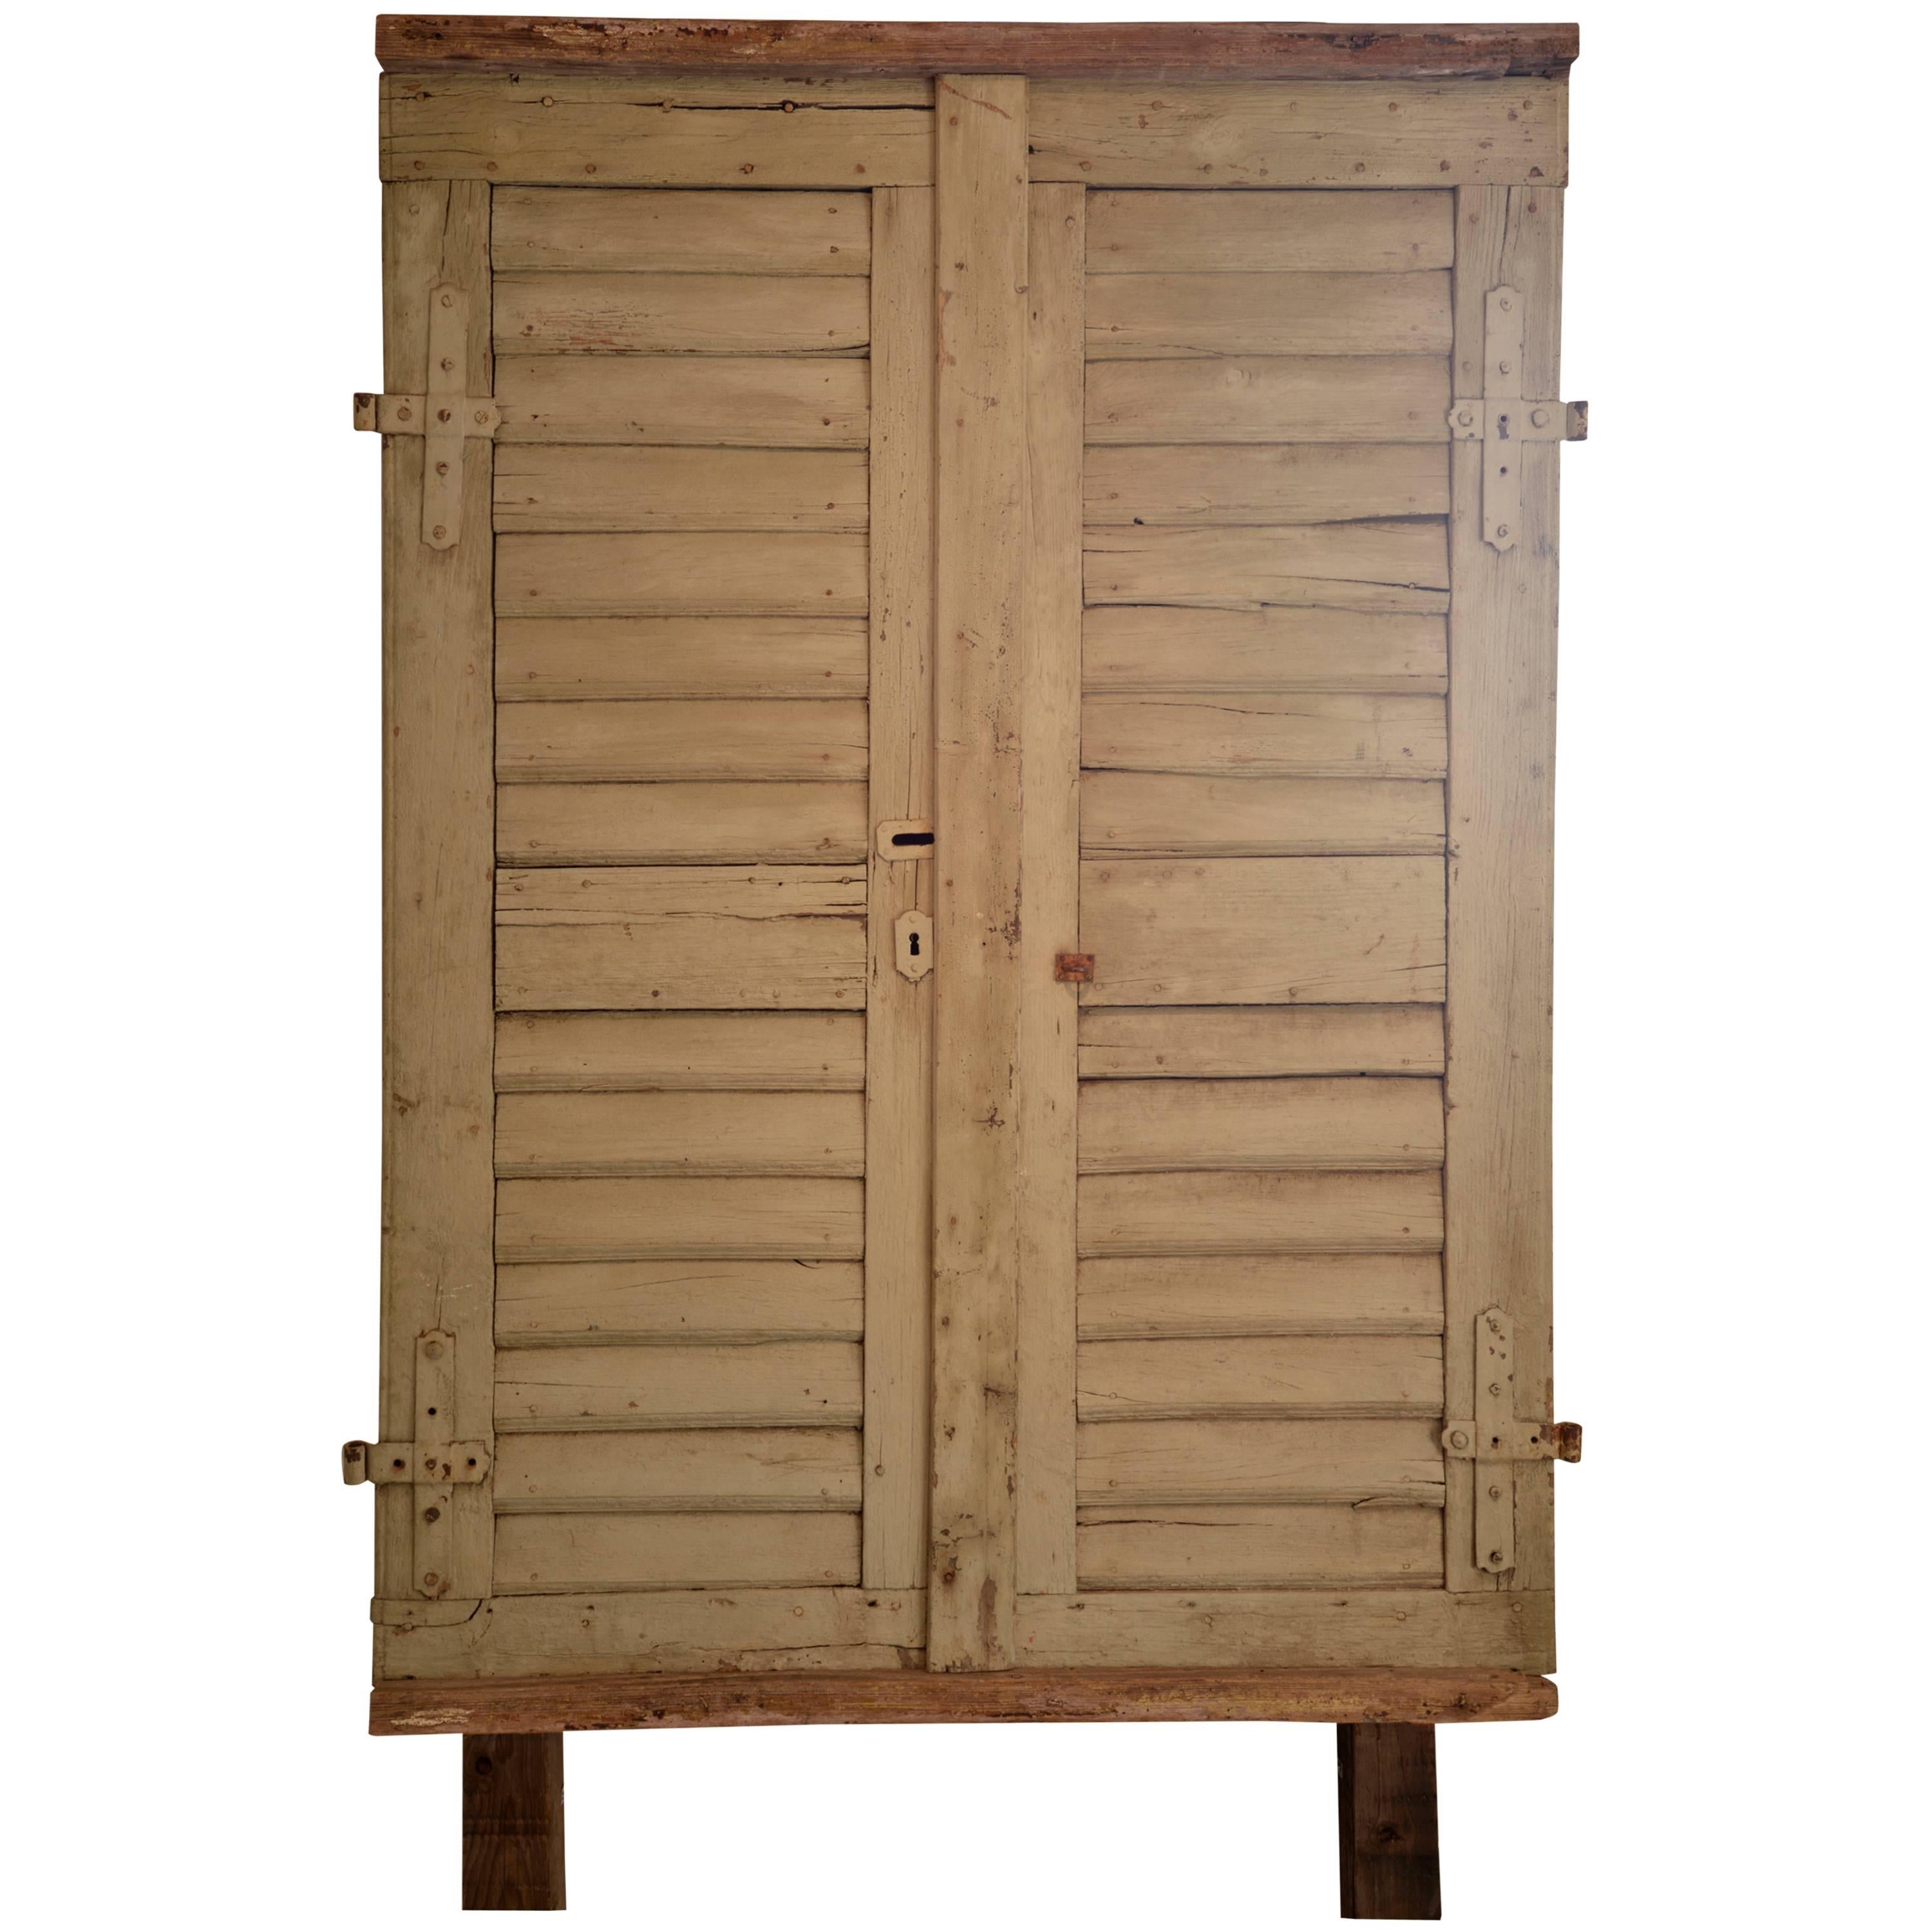 Antique Door Panel with Original Hardware For Sale